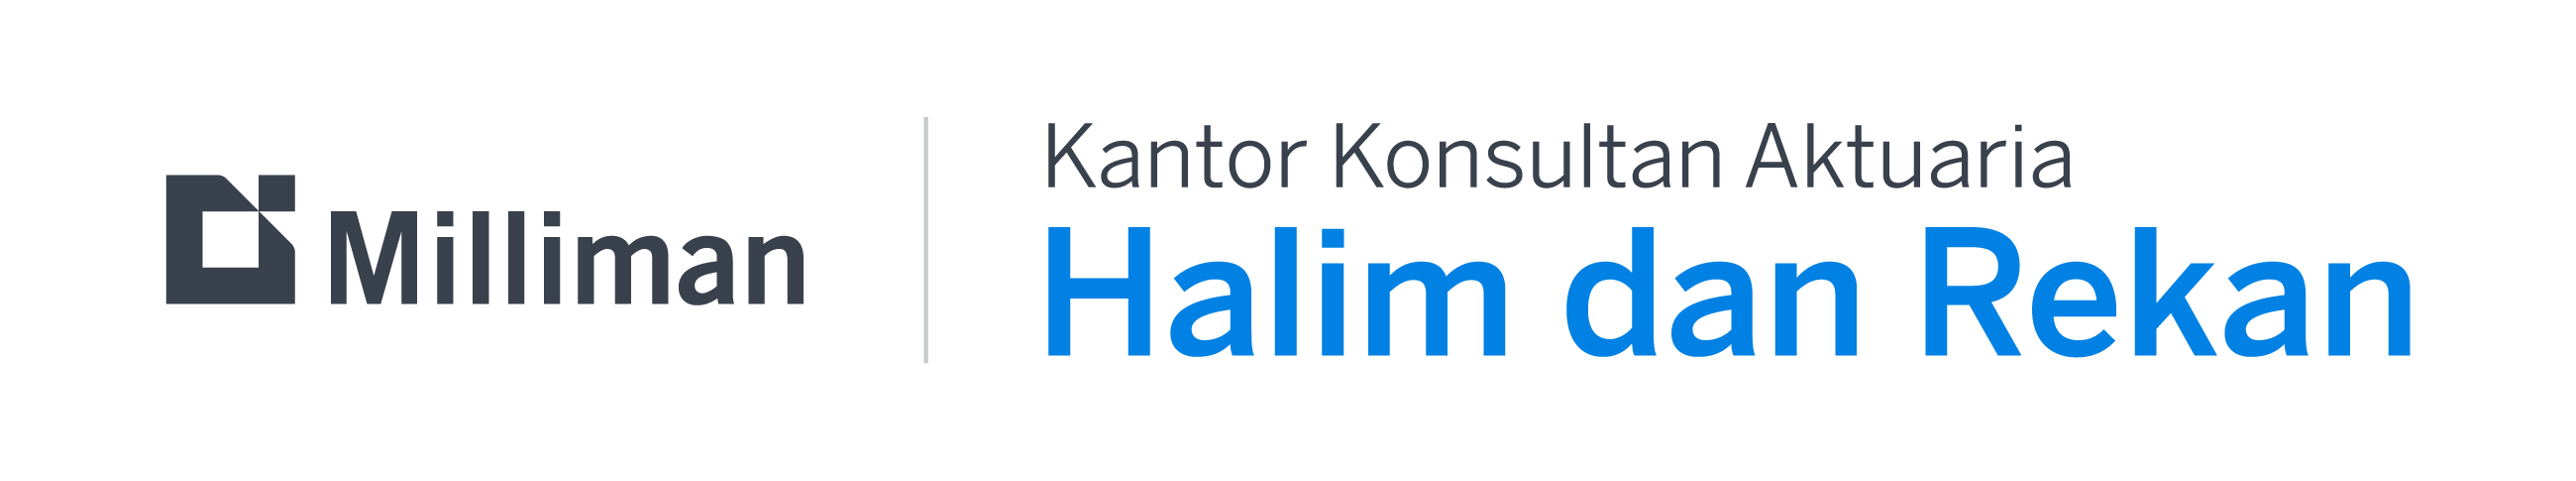 Logo KKA Halim dan Rekan